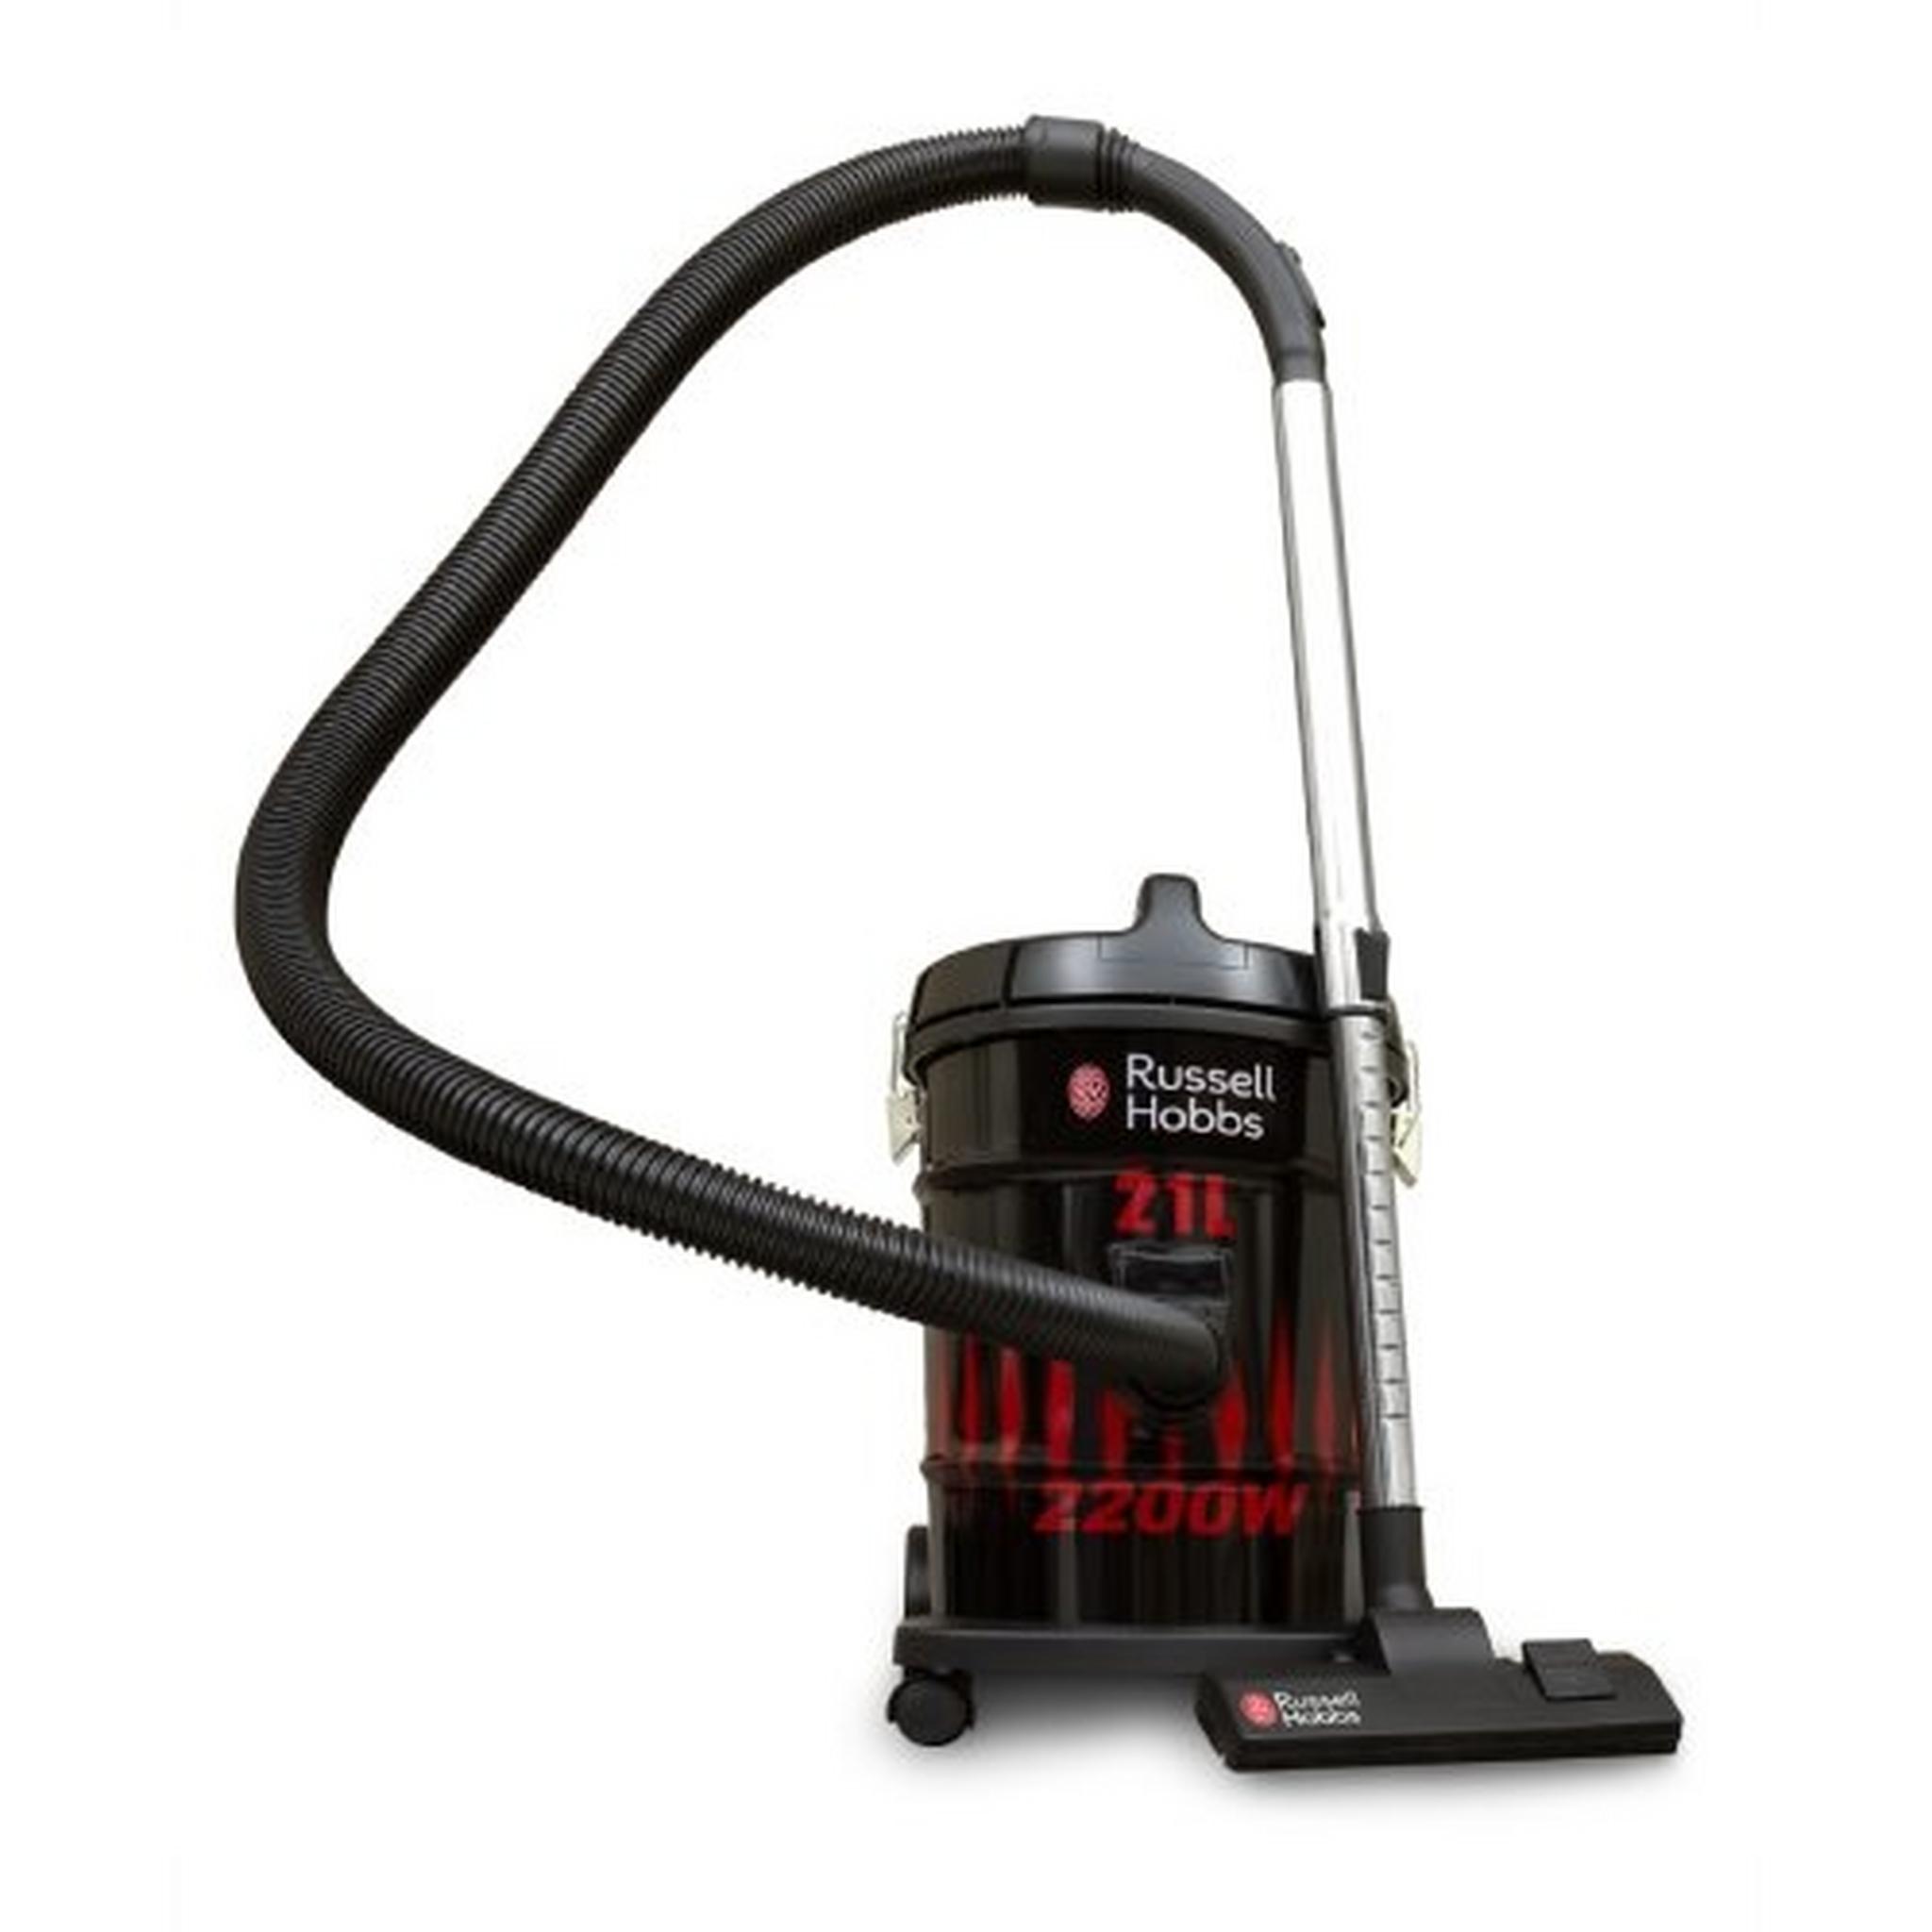 Russell Hobbs 2X Heavy Duty Vacuum Cleaner, 2200W, 21 Liters, - Black/Red